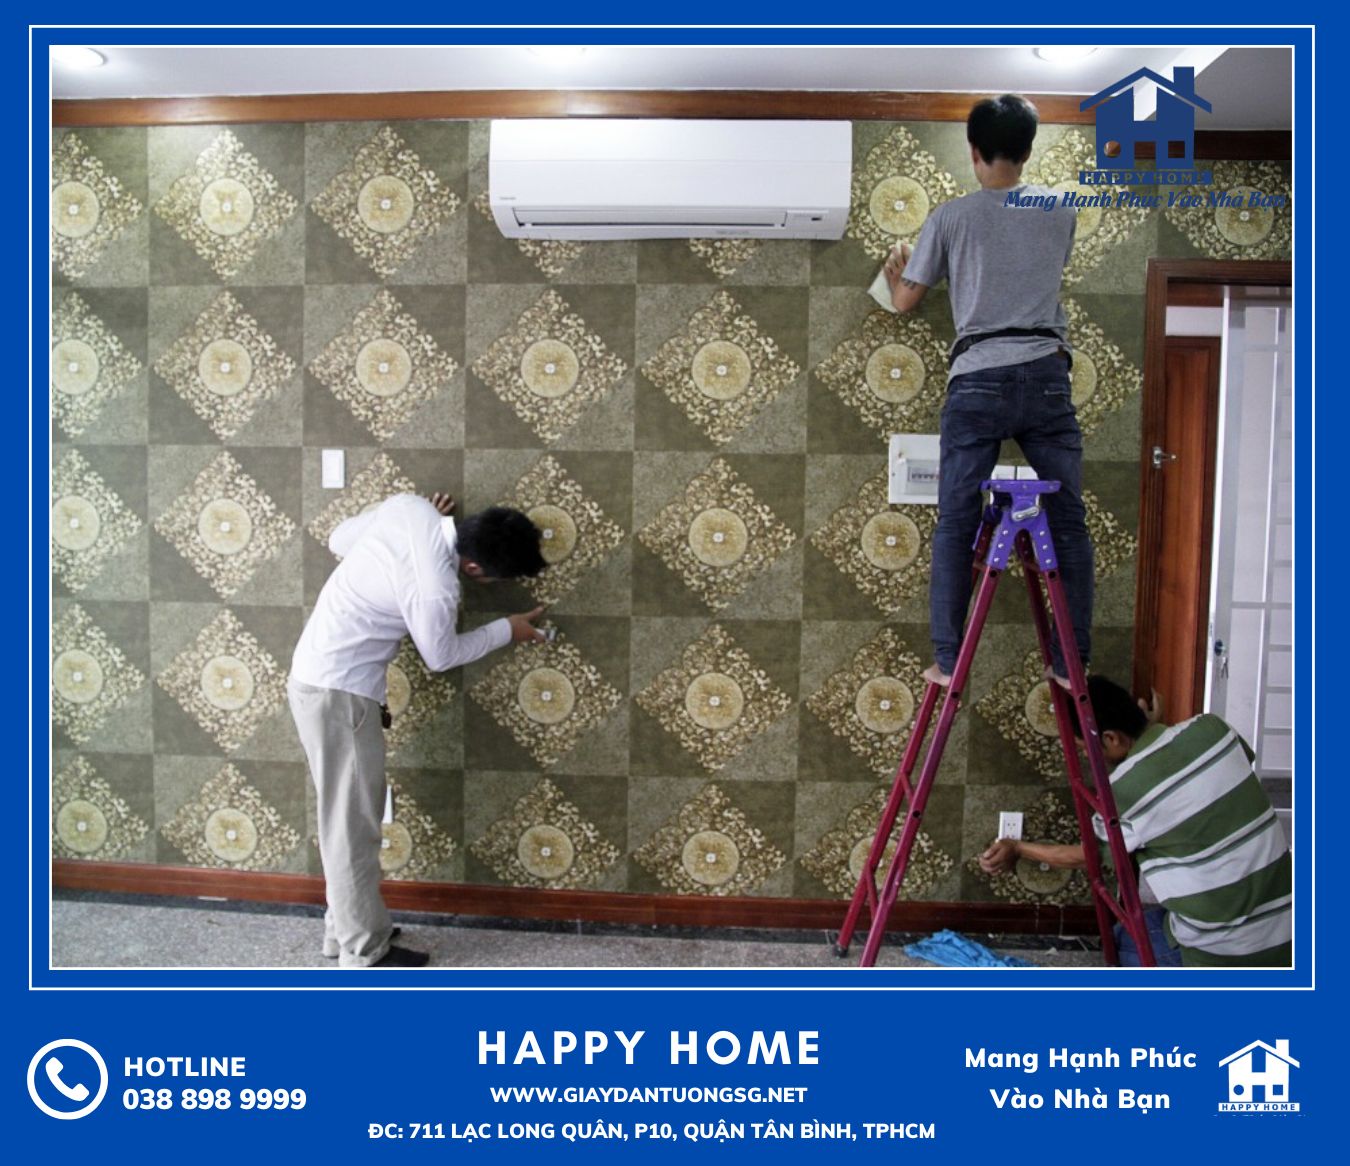 Đội ngũ Happy Home đang thi công giấy dán tường đẹp cho khách hàng